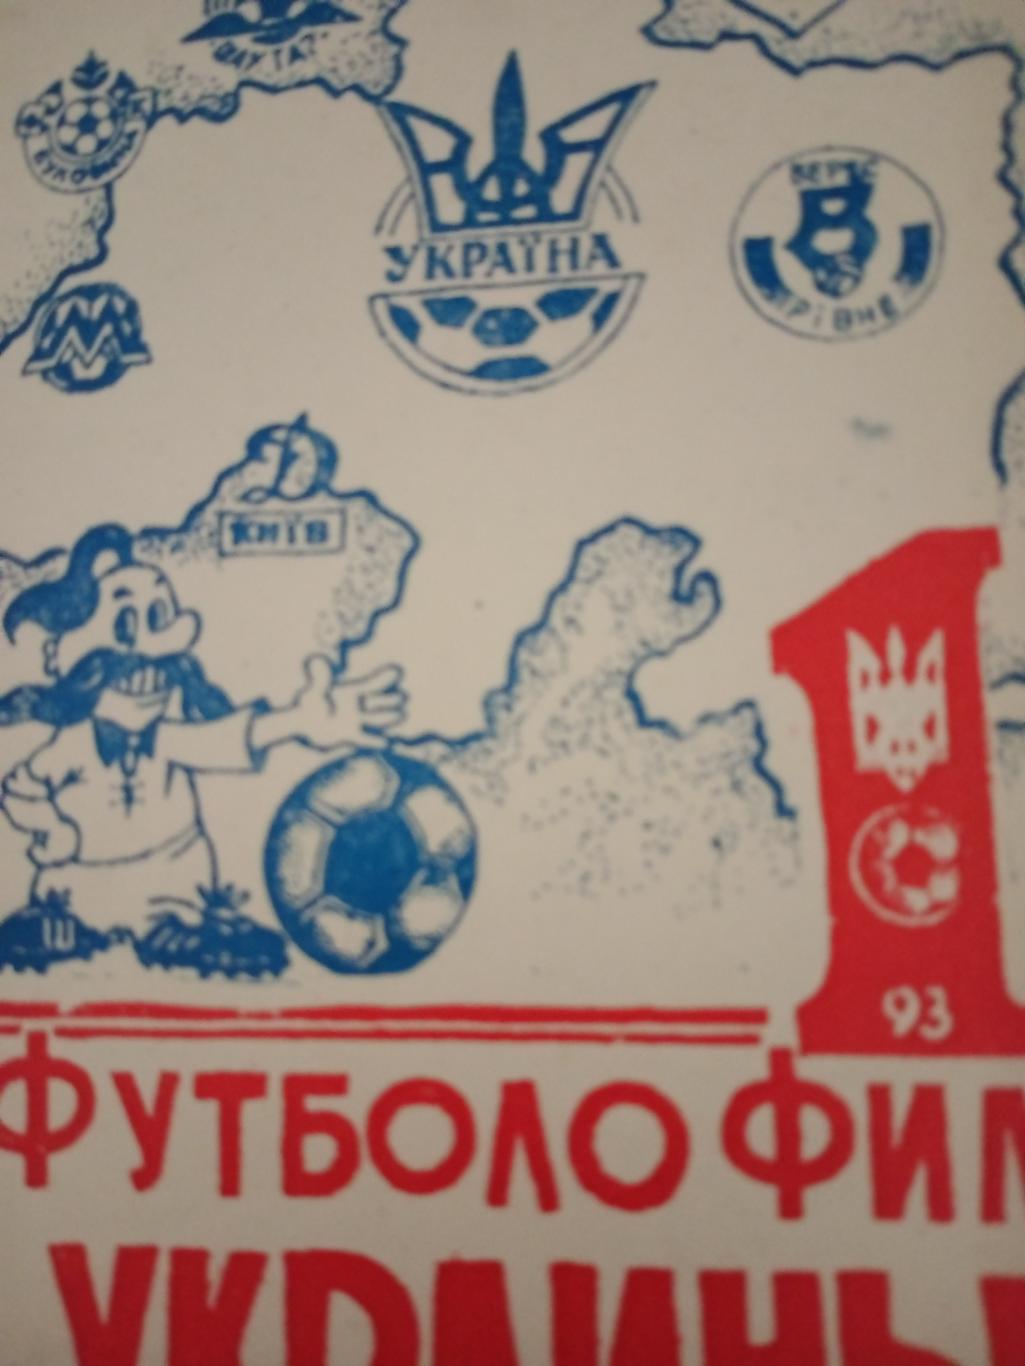 Футболофил Украины. 1993 год. Кривой Рог